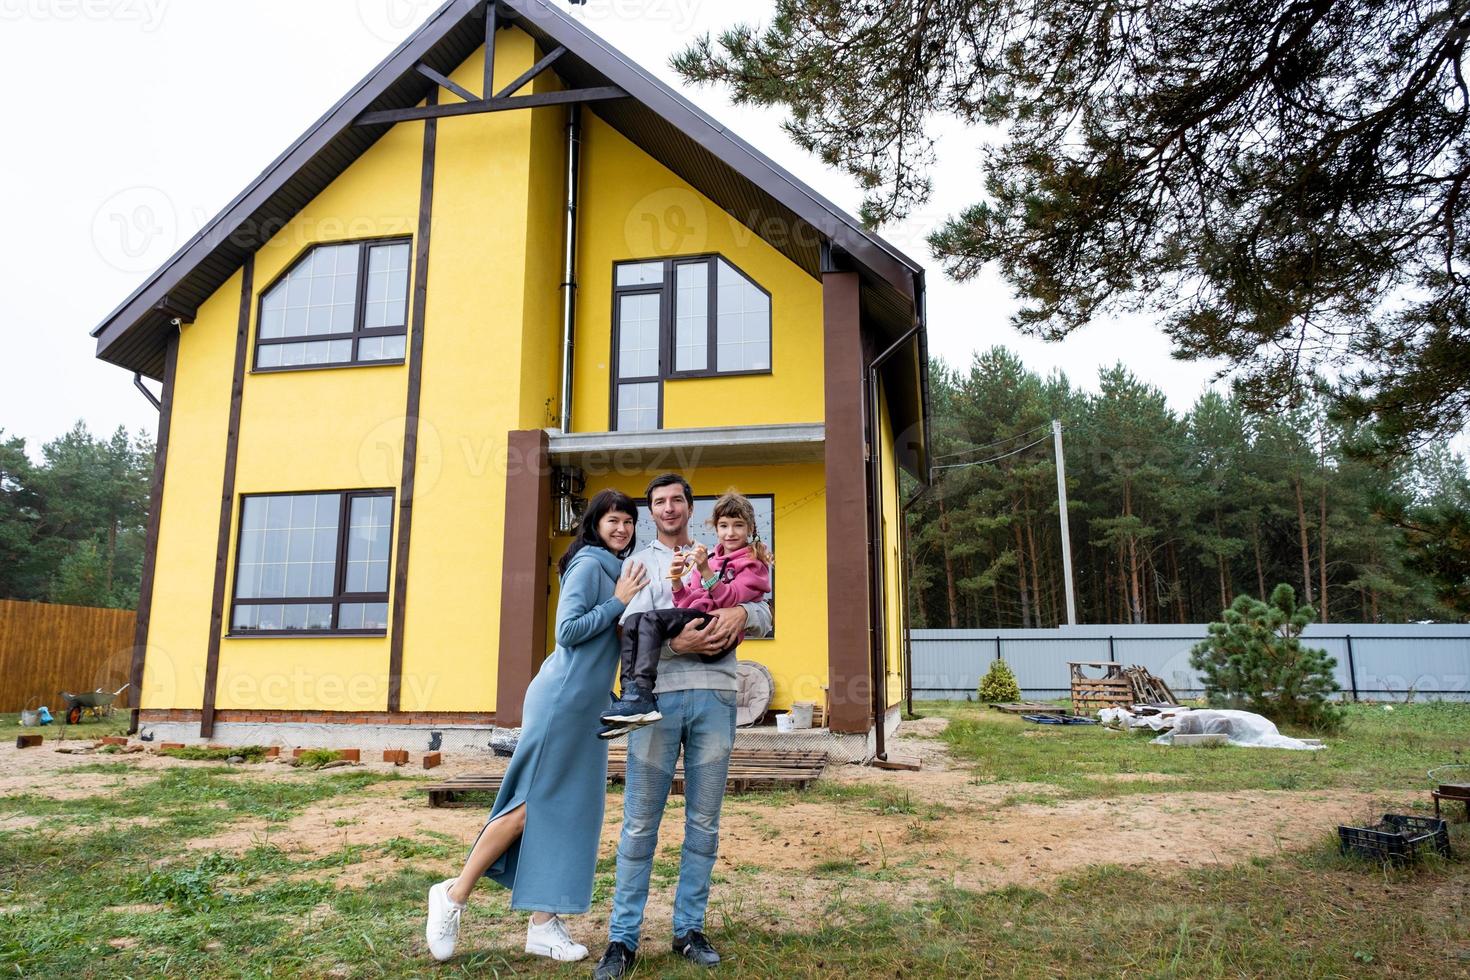 famille heureuse dans la cour d'une maison inachevée - achat d'un chalet, hypothèque, prêt, déménagement, construction photo